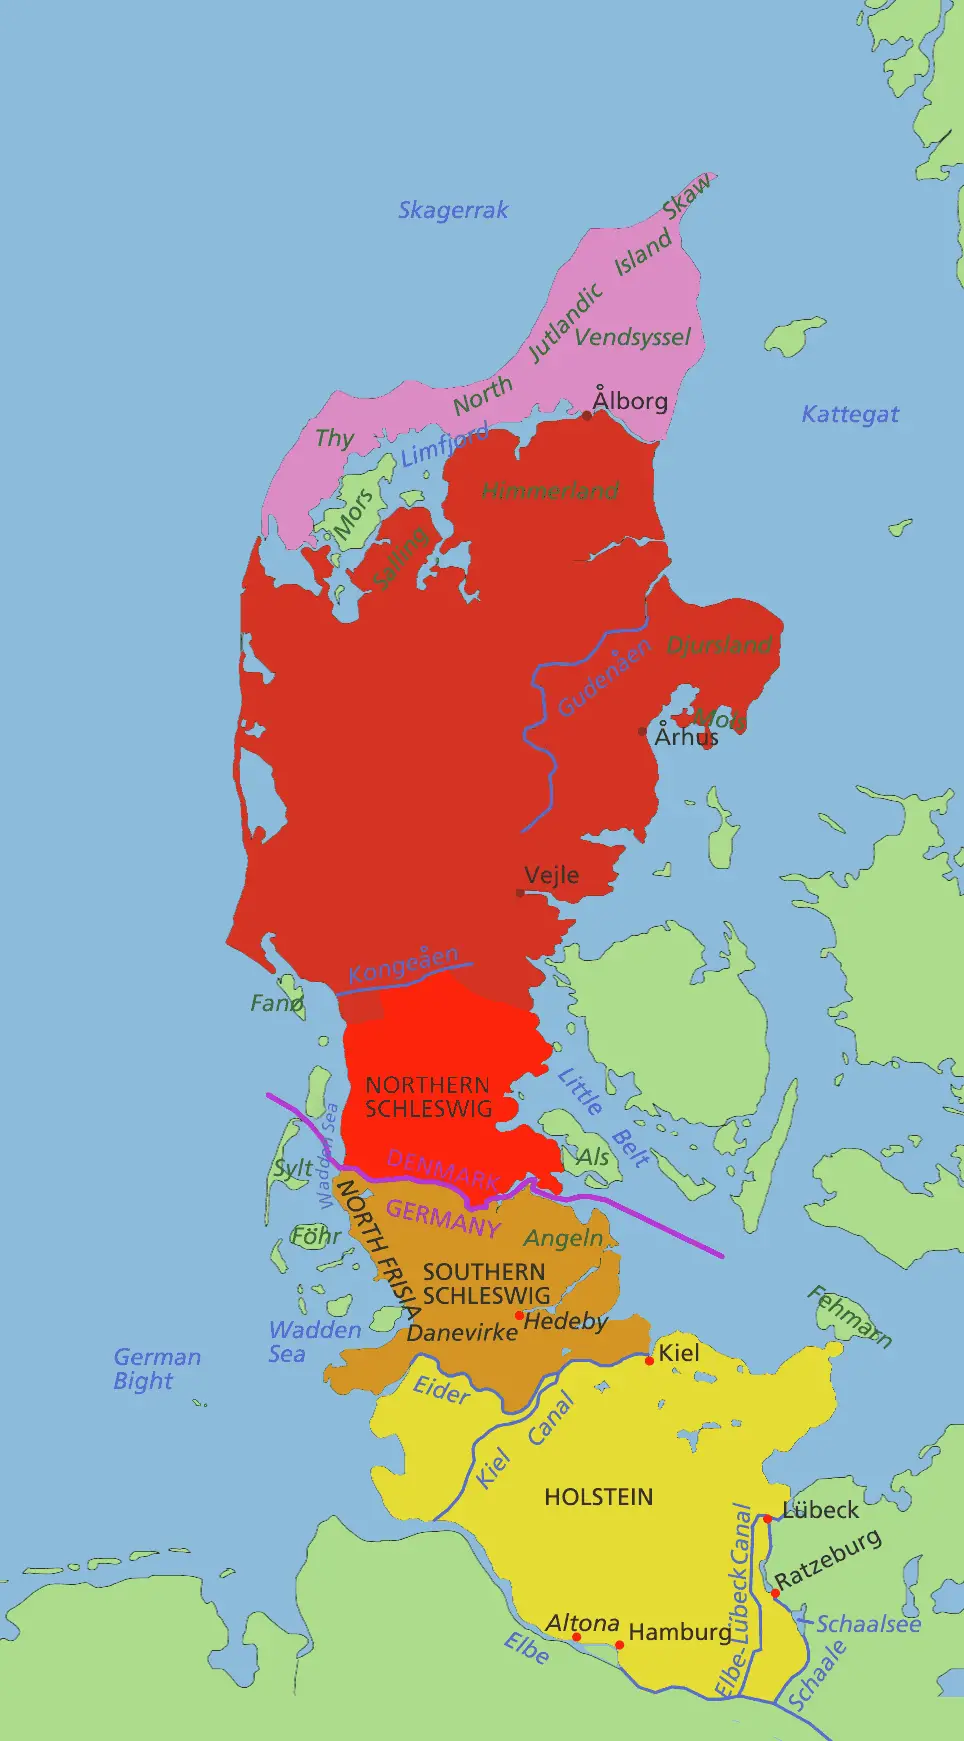 Jutland Peninsula Map • Mapsof.net